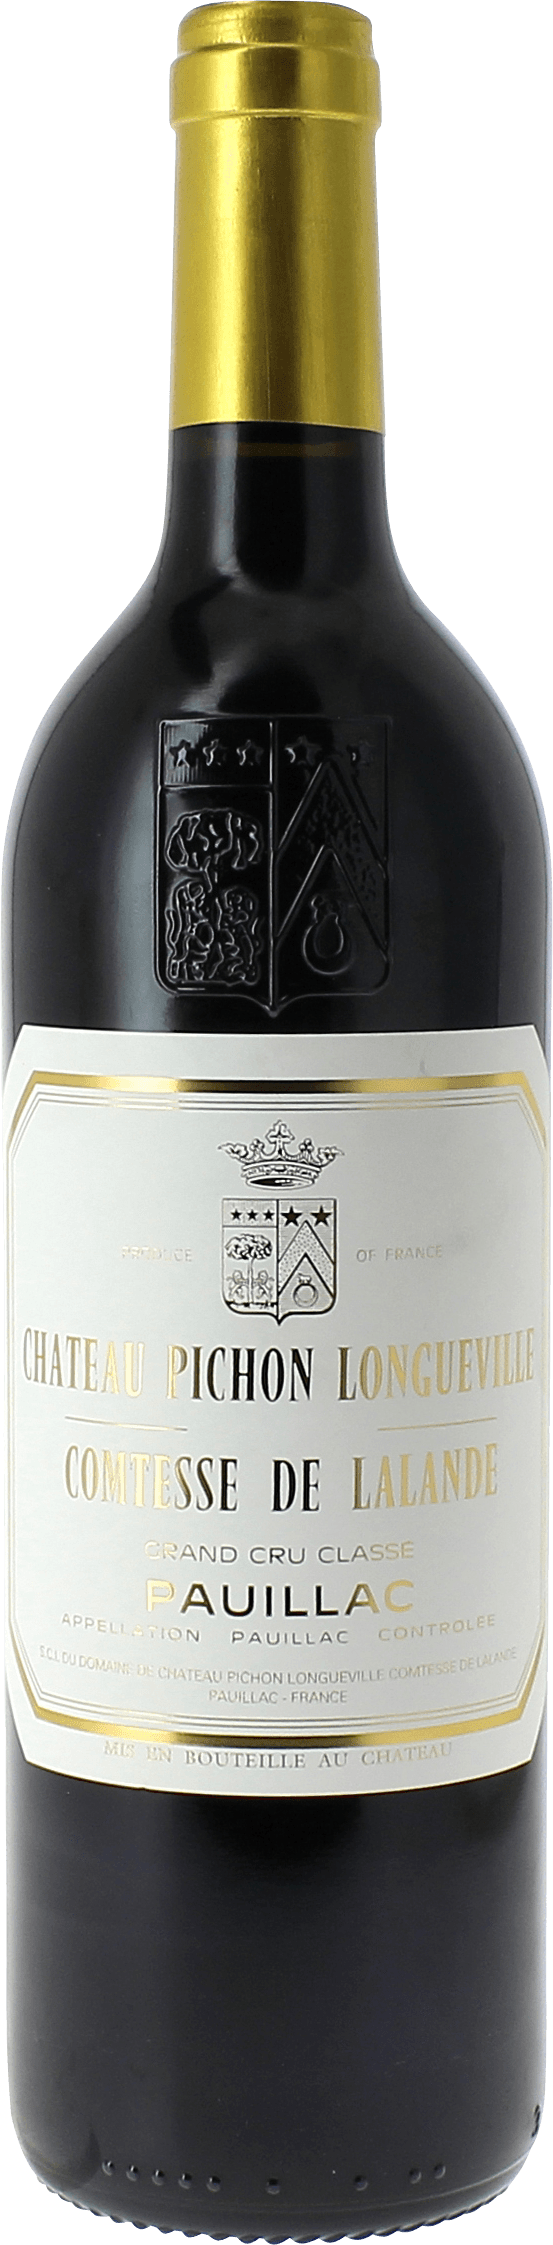 Pichon comtesse de lalande 2018 2me Grand cru class Pauillac, Bordeaux rouge